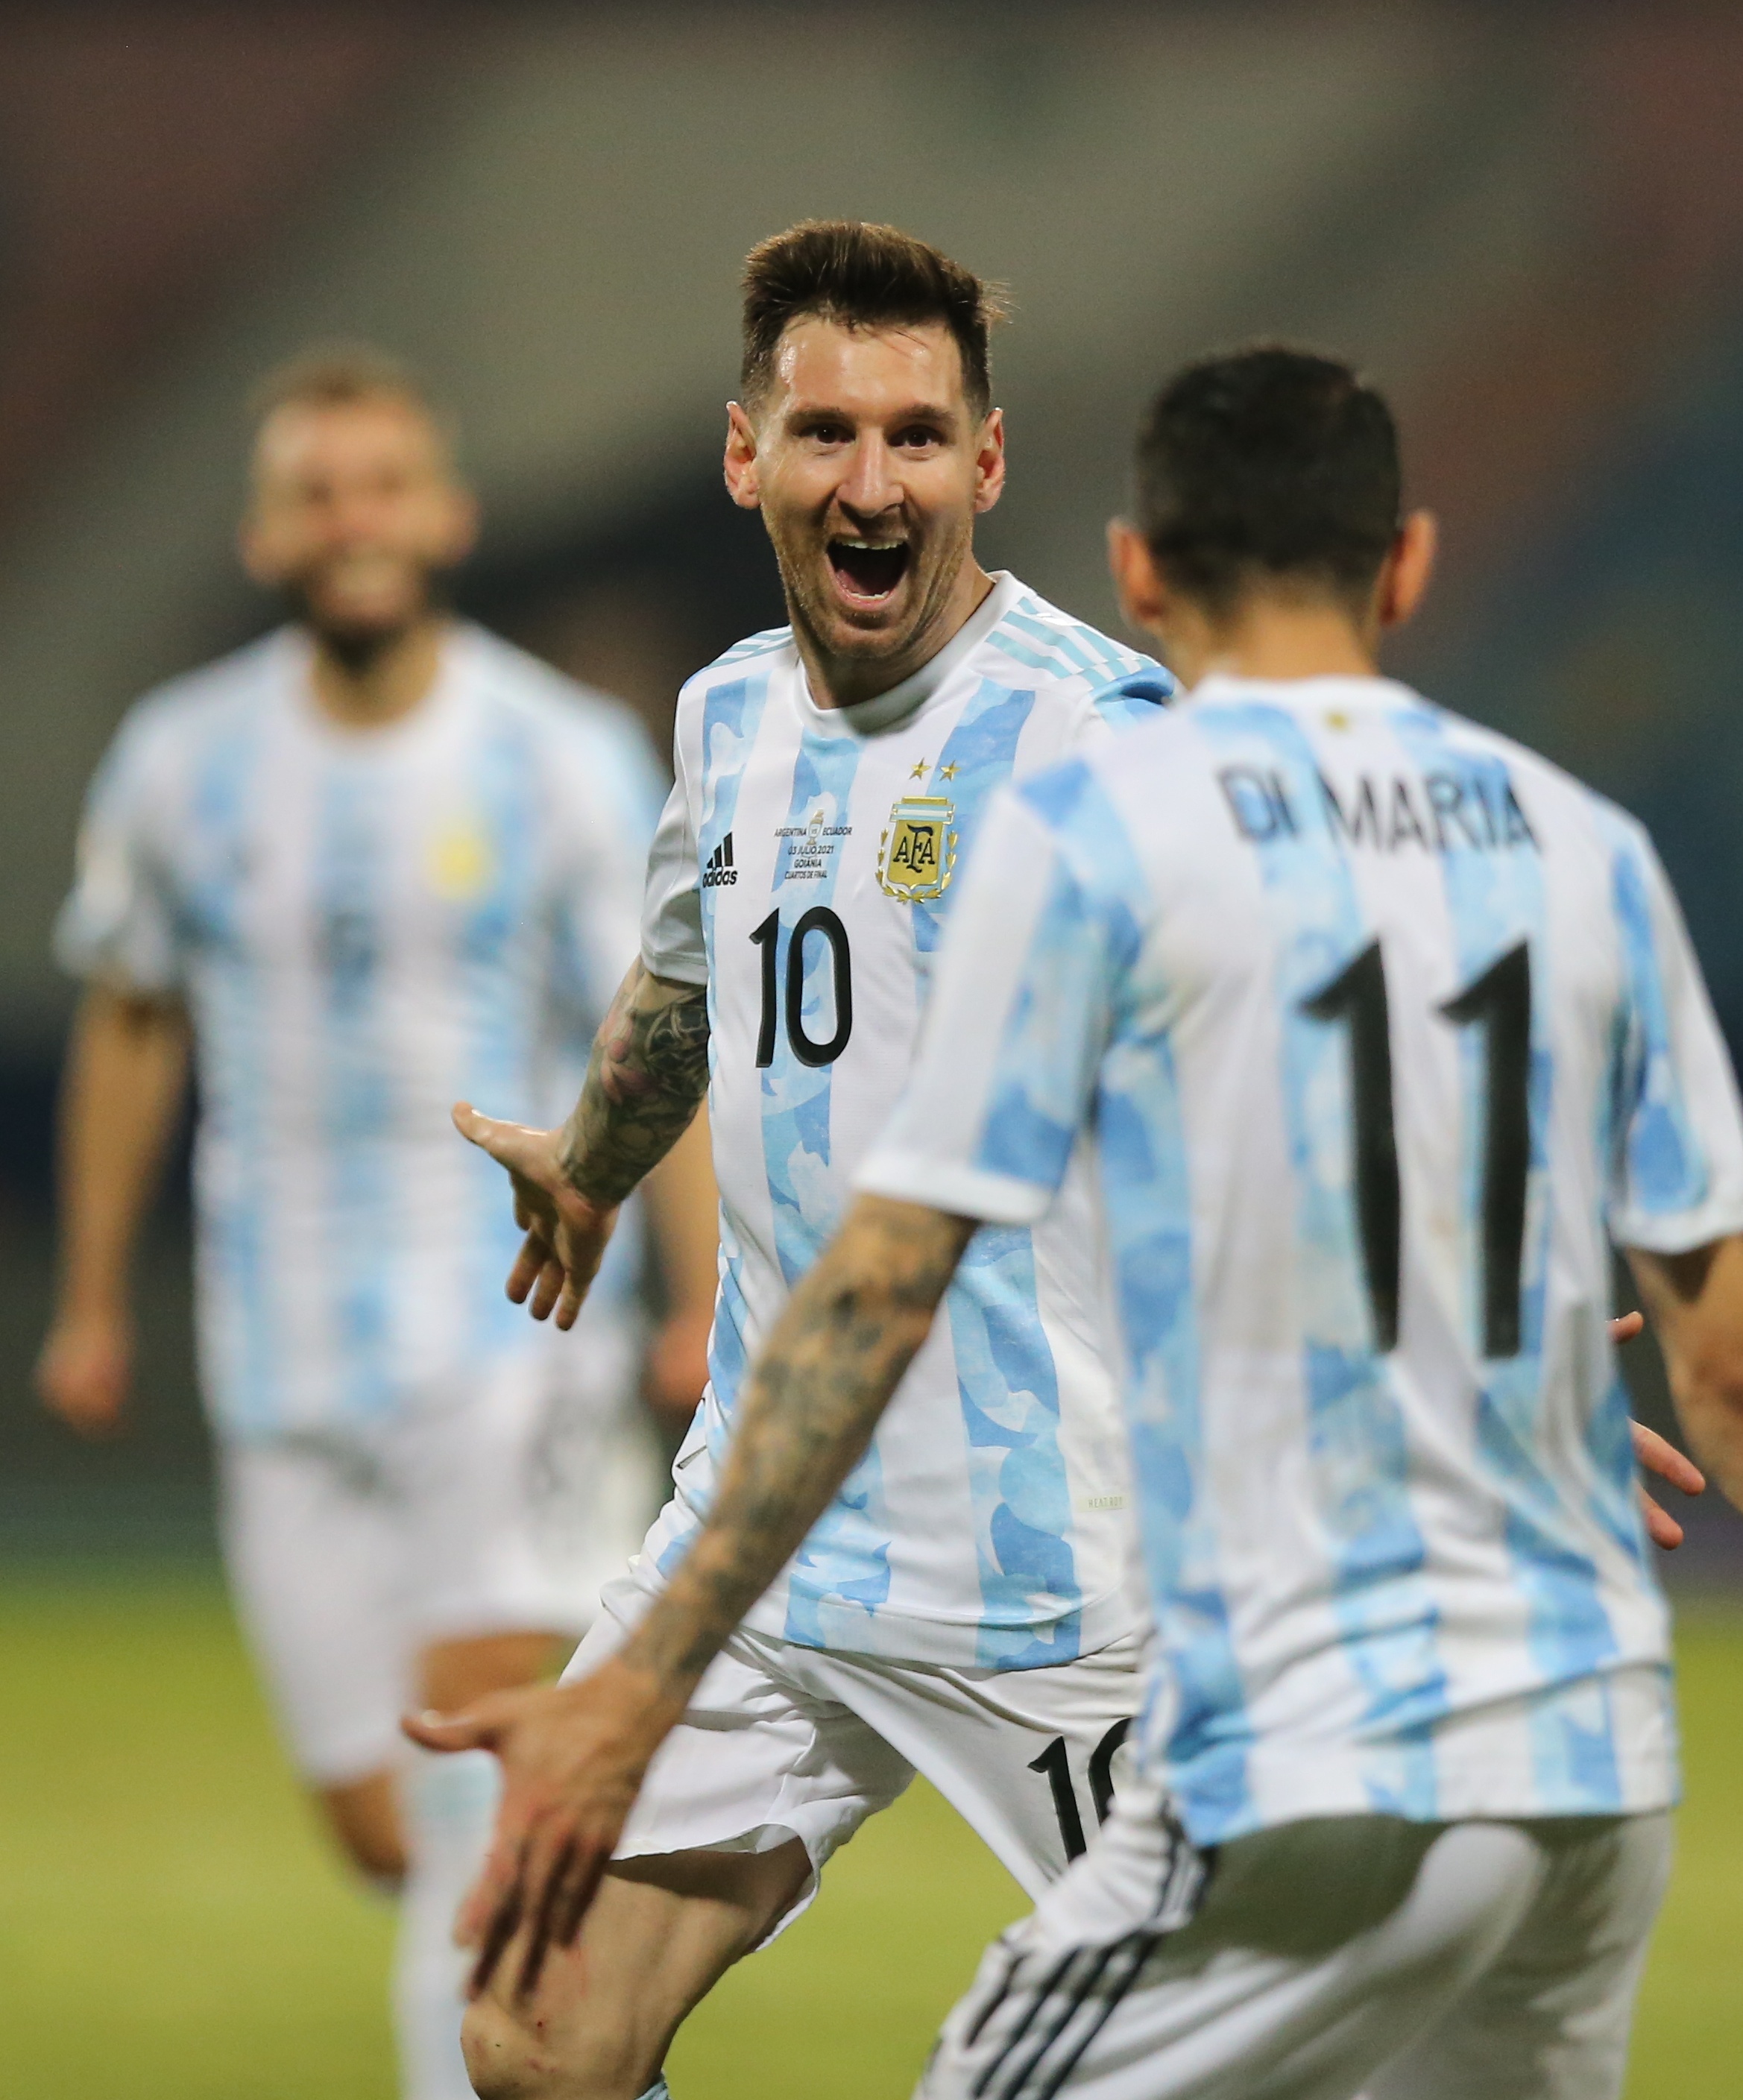 Skor argentina vs ekuador copa america 2021